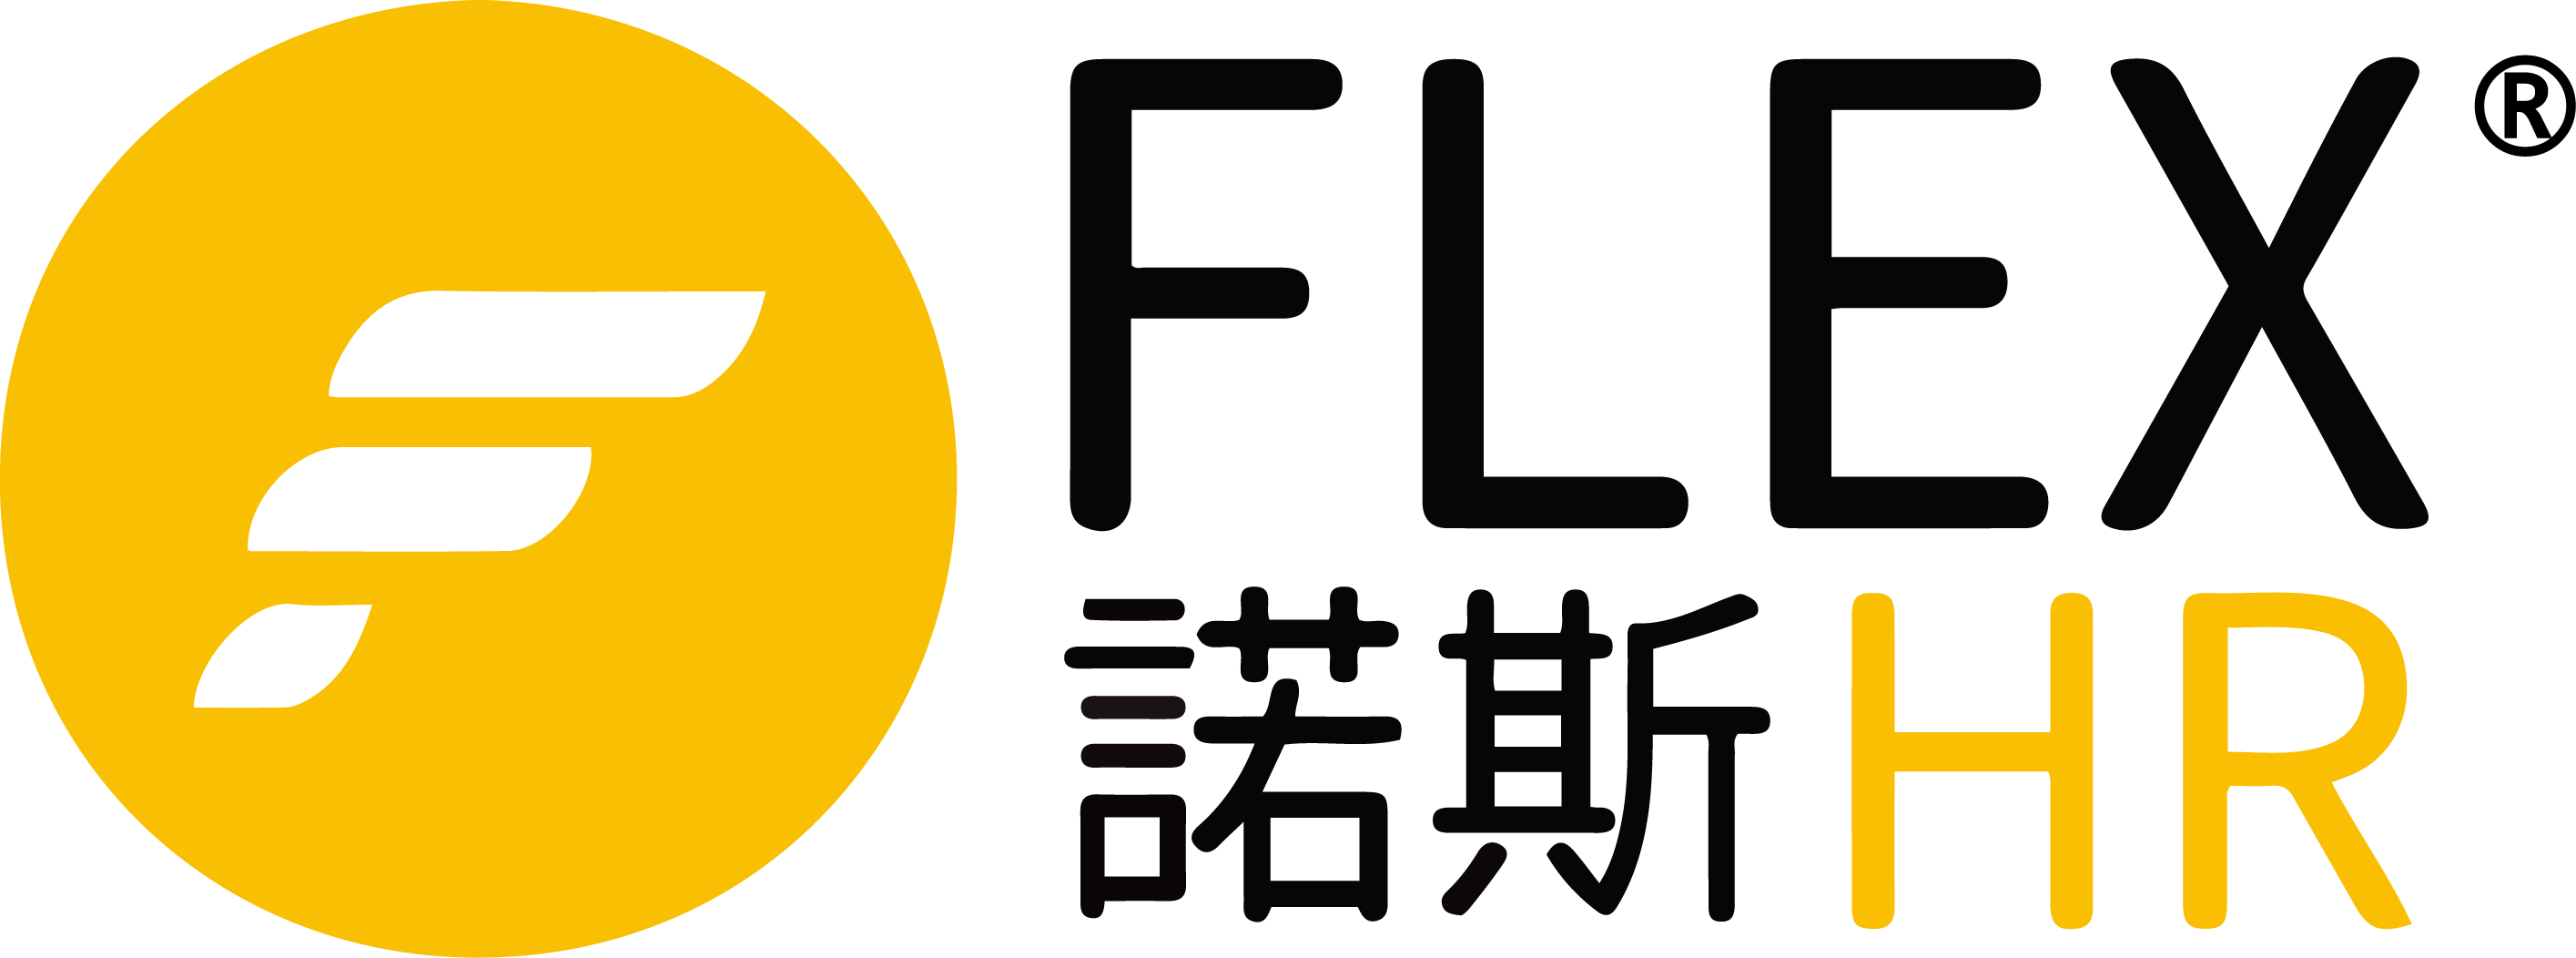 香港中小企 Hong Kong SME: Flex Human Resources